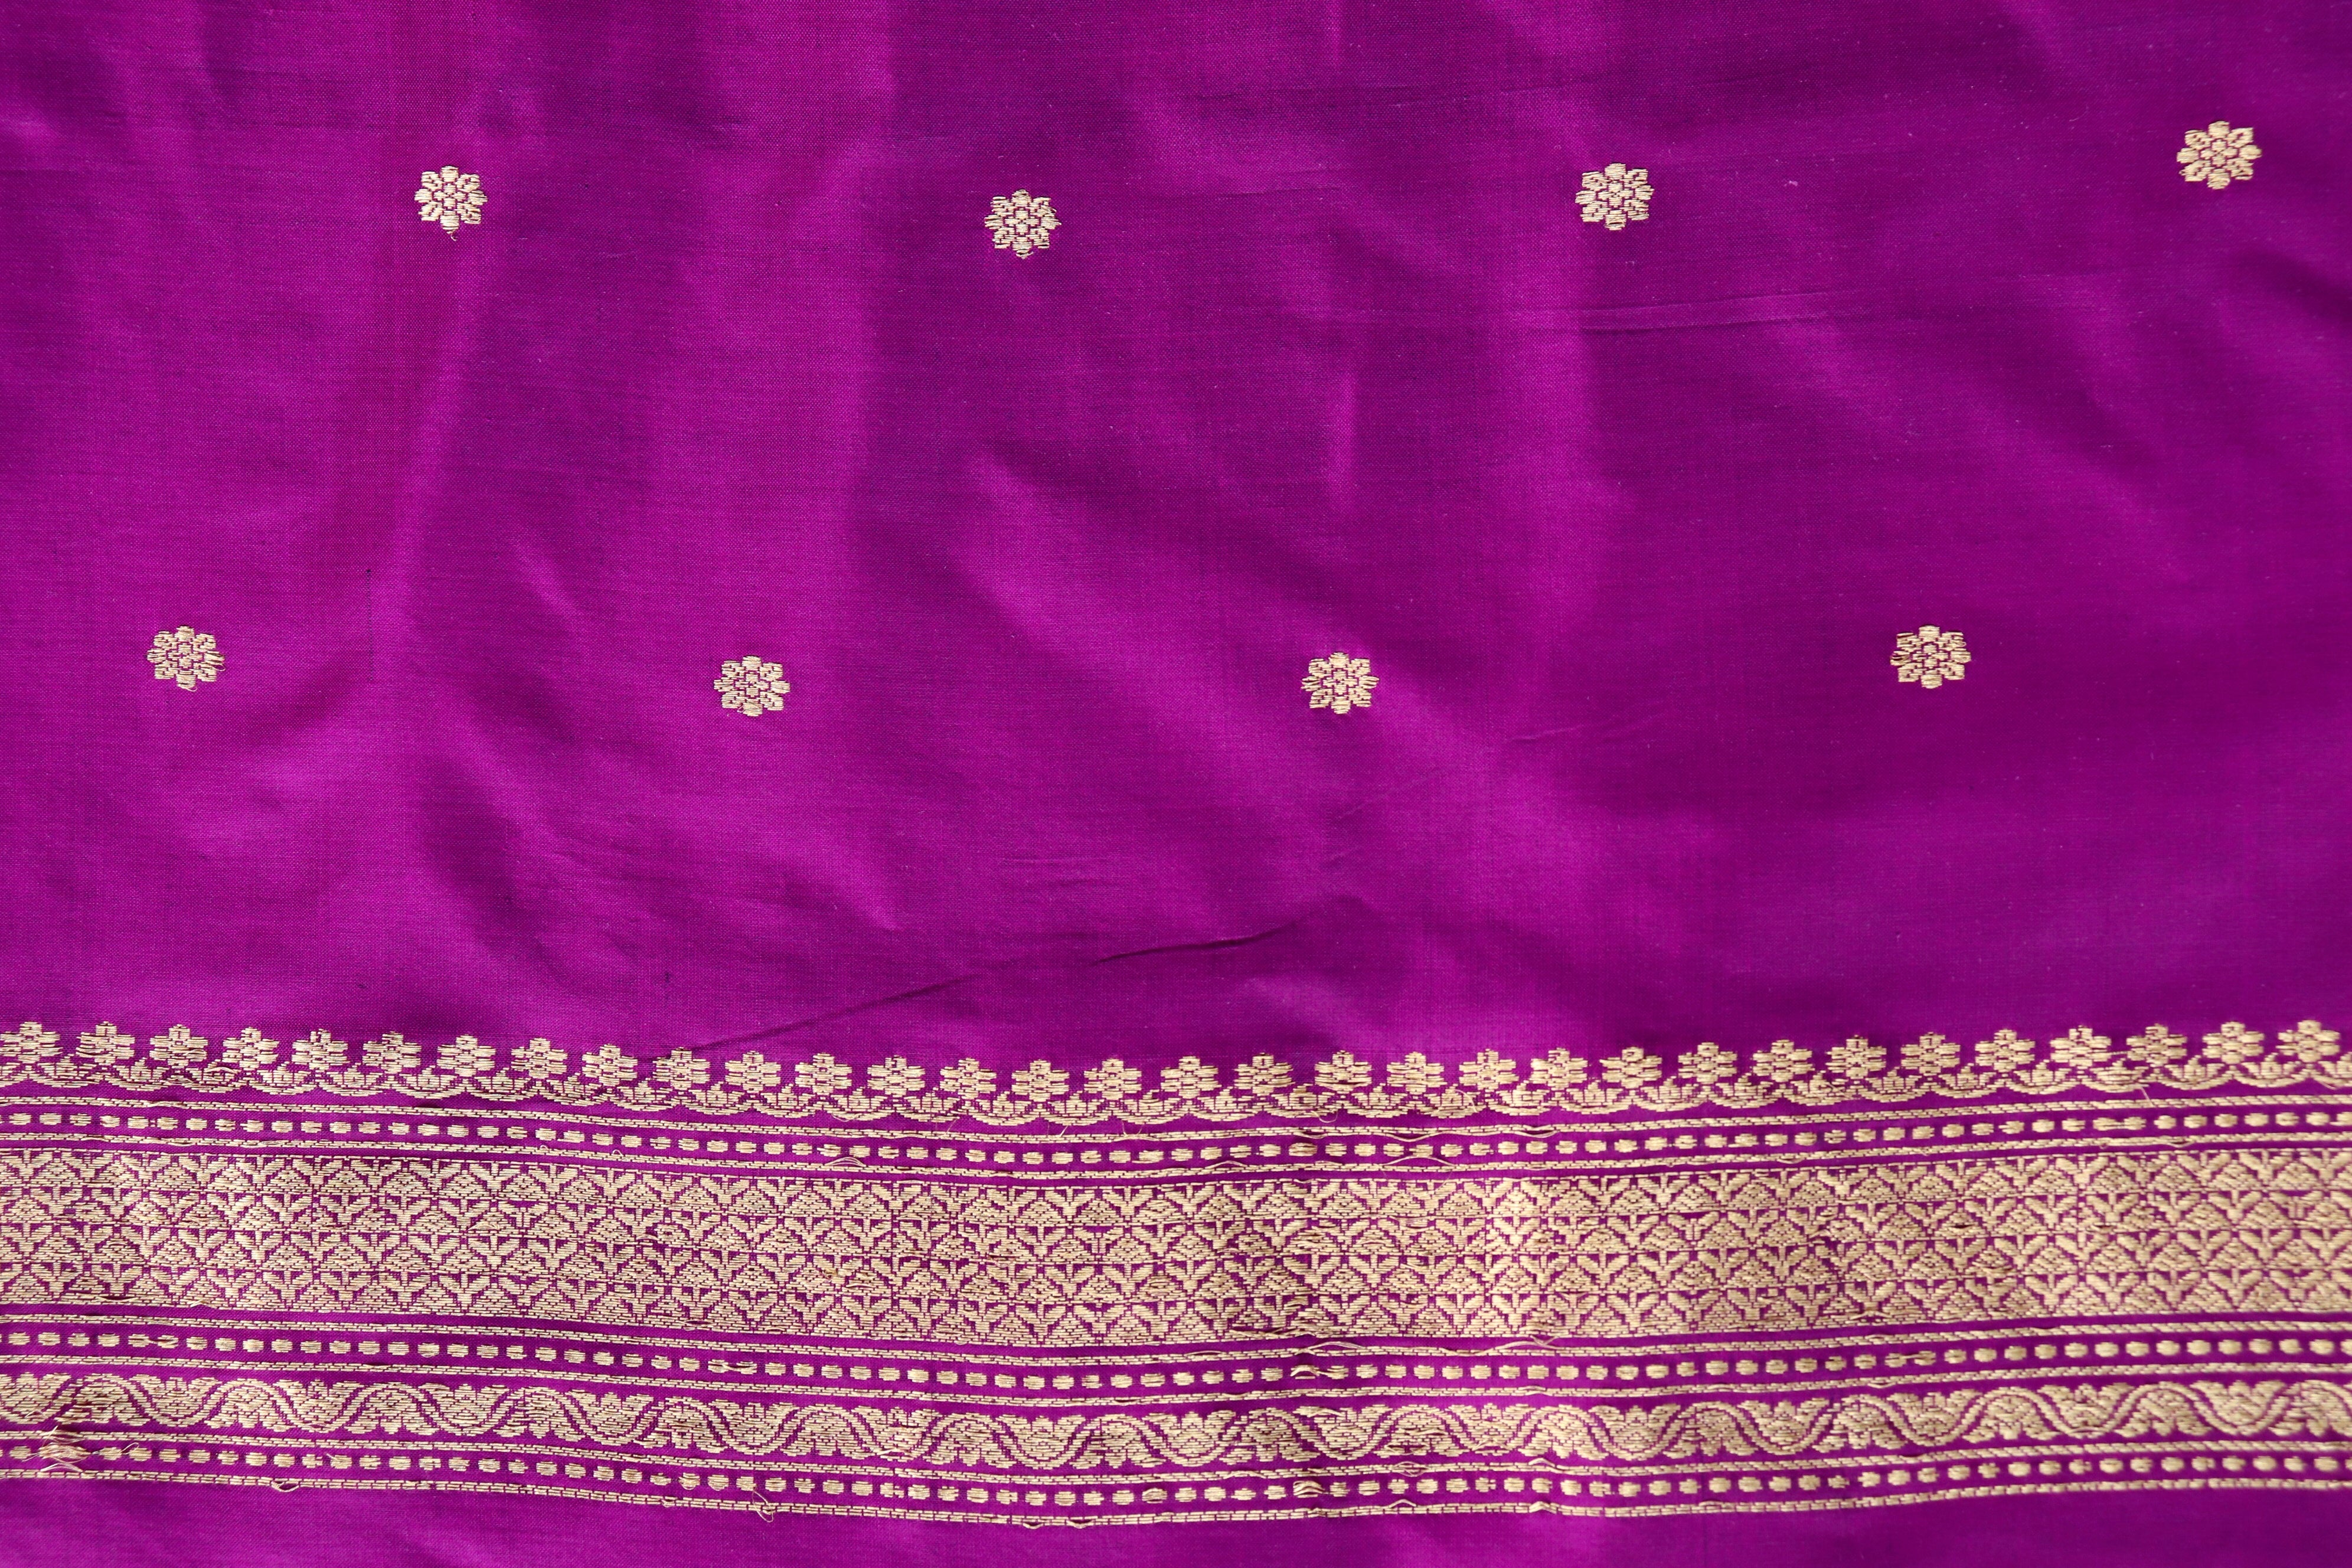 Handloom, Banarasi Handloom Saree, Alfi Saree, Tilfi Saree, Tilfi Saree Banaras, Tilfi, Banarasi Bunkar, Banarasi Bridal Wear, BridalWear, Banarasi Handloom Banarasi Purple Pure Silk Banarasi Three Piece Suit Material Set Banarasi Saree